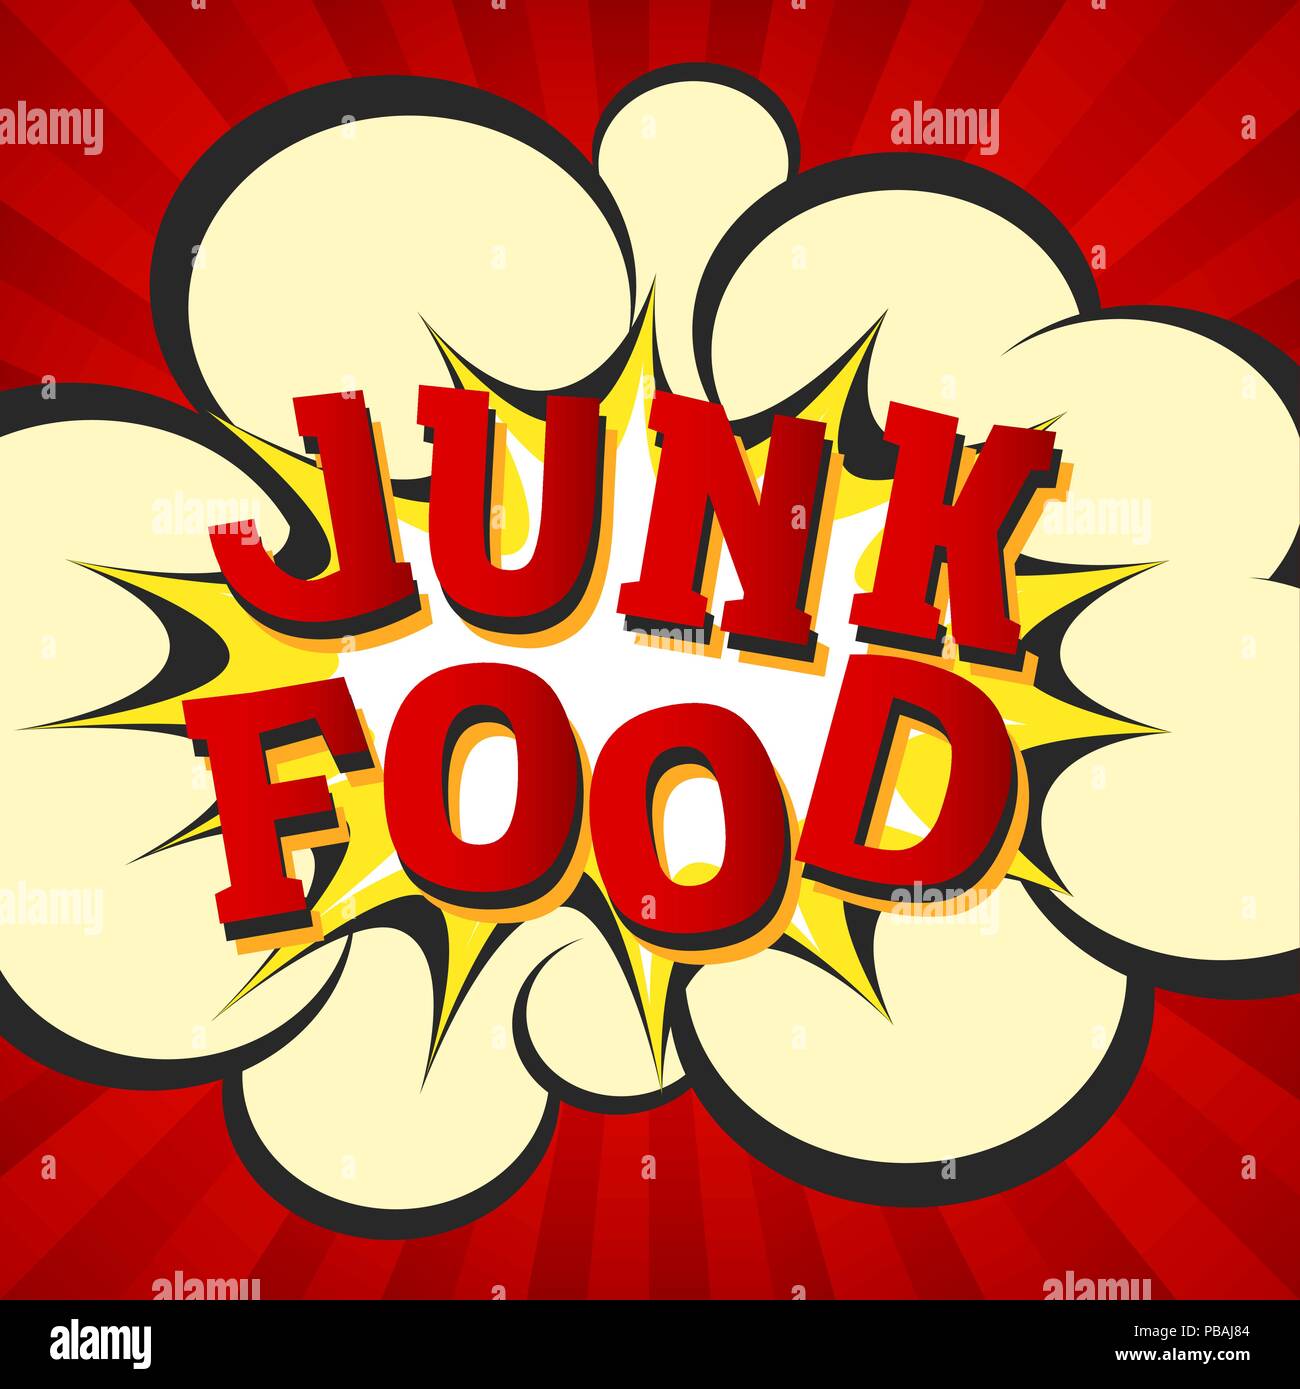 Junk Food retro style Bild. Comic cartoon Explosion mit hypno strahlen Hintergrund. Vector Illustration für Diät und Ernährung, Gewichtsreduktion, Gesundheit und b Stock Vektor